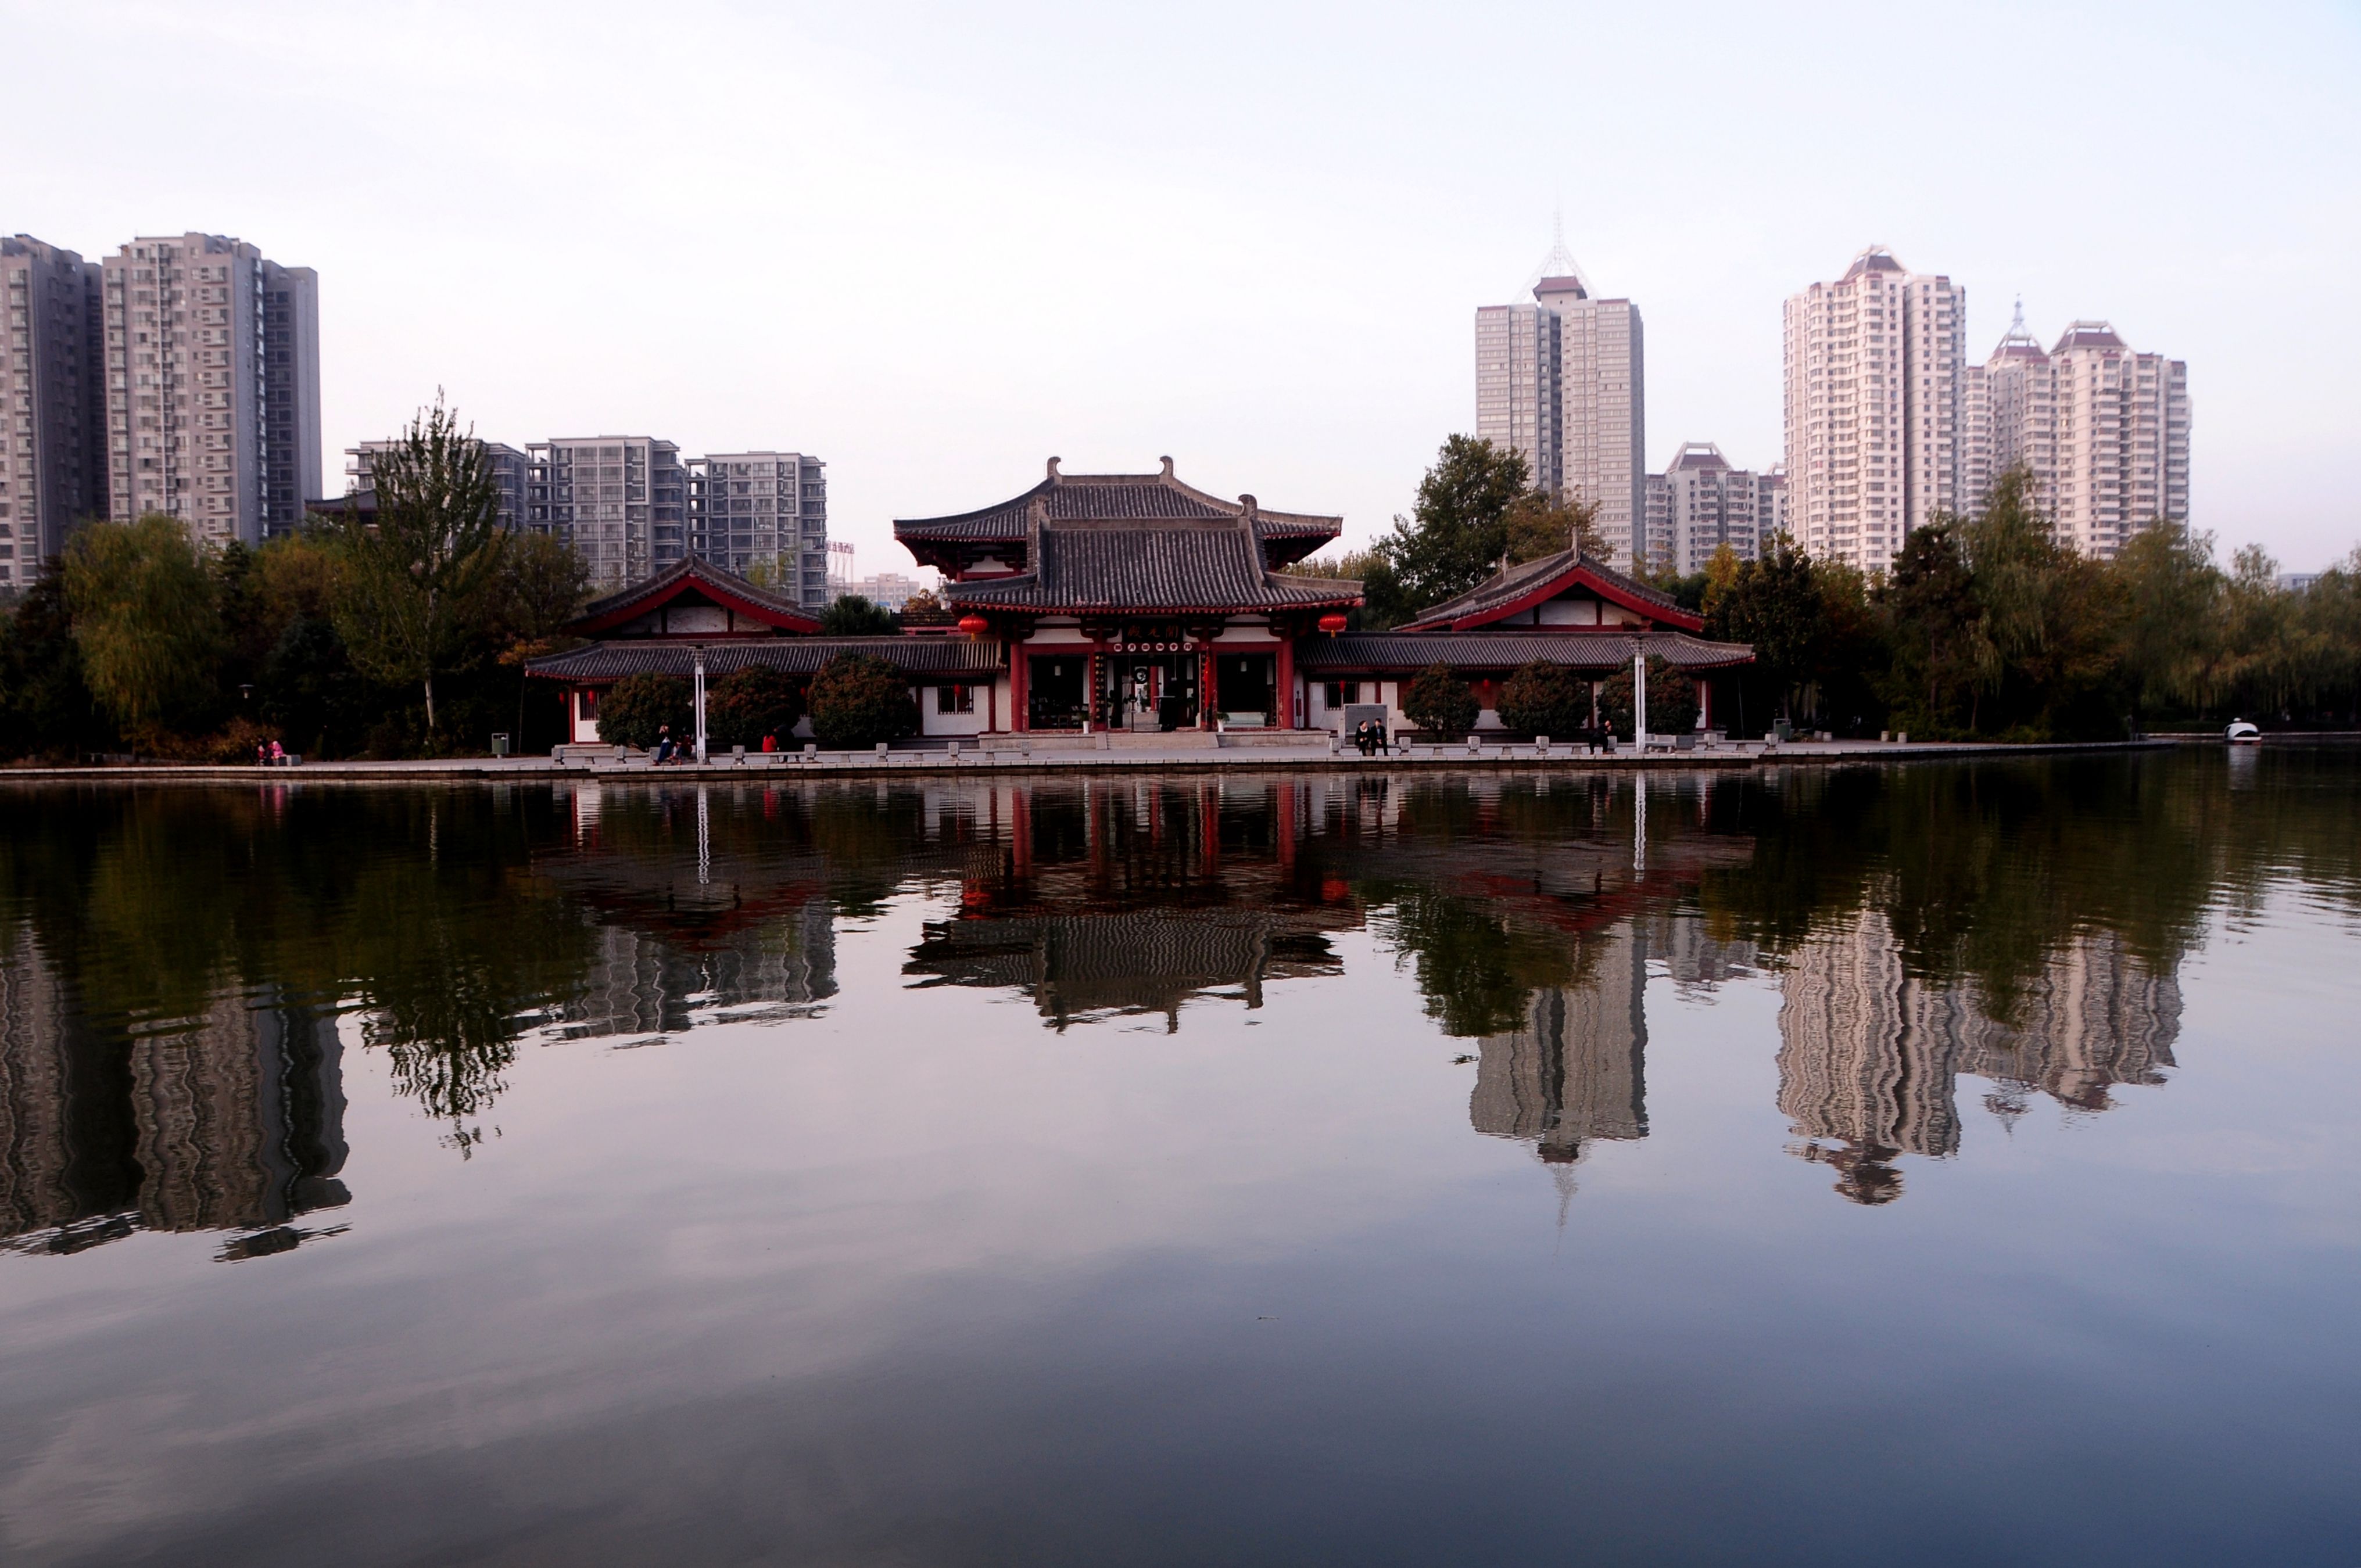 丰庆公园是现代生态景观与历史文化景观融为一体的皇家园林,仿唐建筑